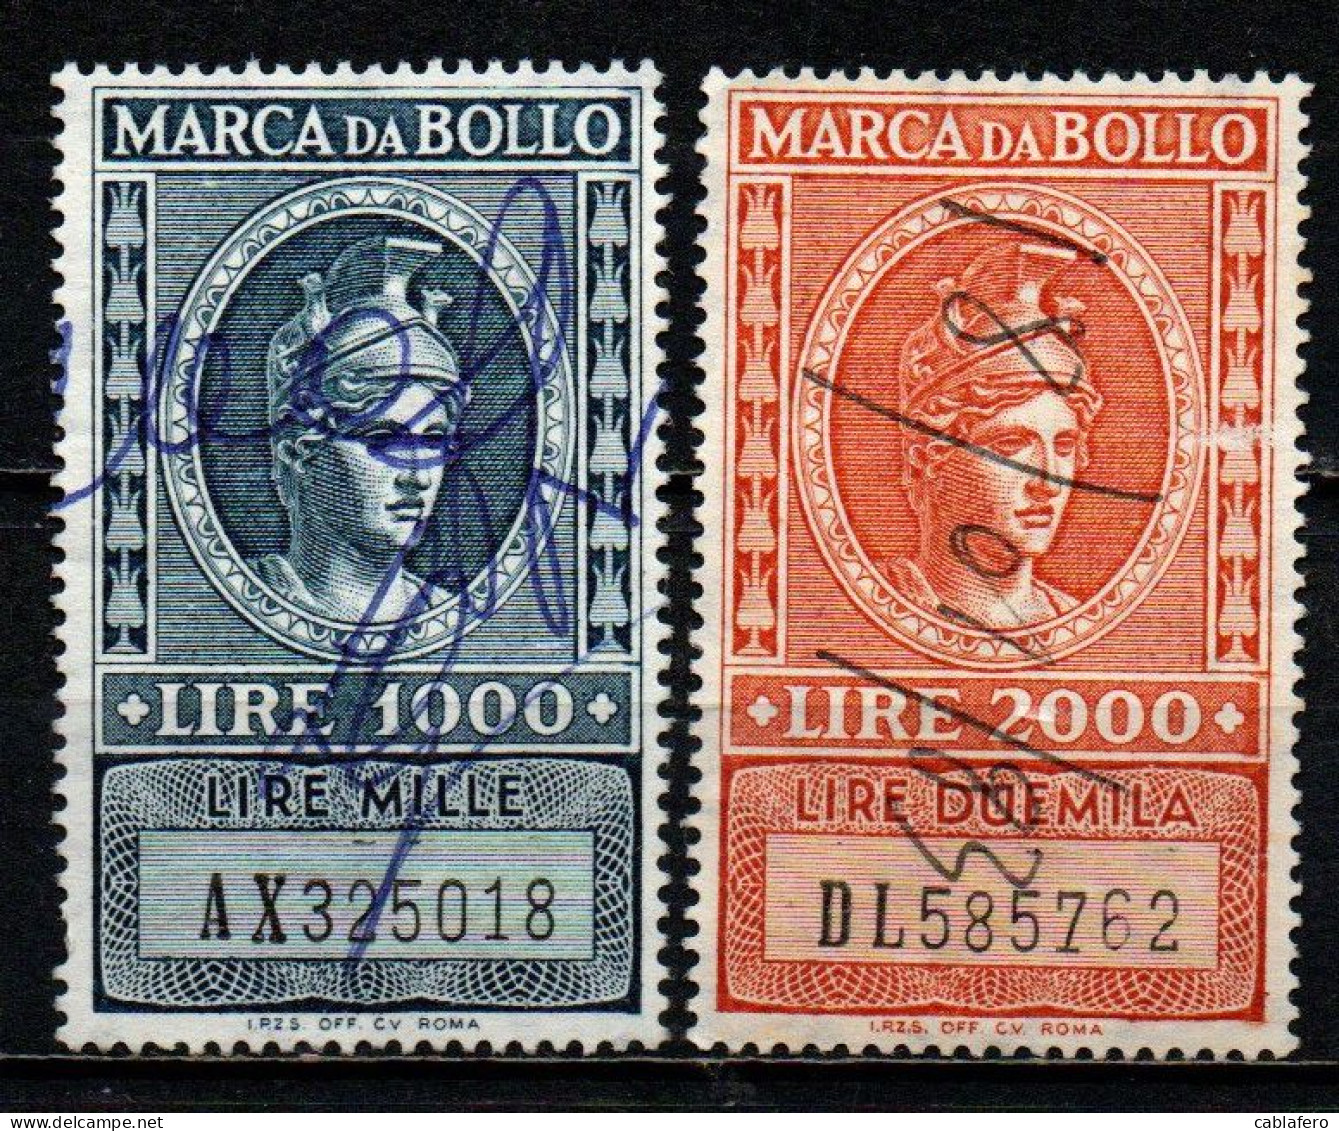 ITALIA REPUBBLICA - 1959 - MARCA DA BOLLO A TASSA FISSA - FILIGRANA STELLA - NUOVO FORMATO - USATI - Fiscales